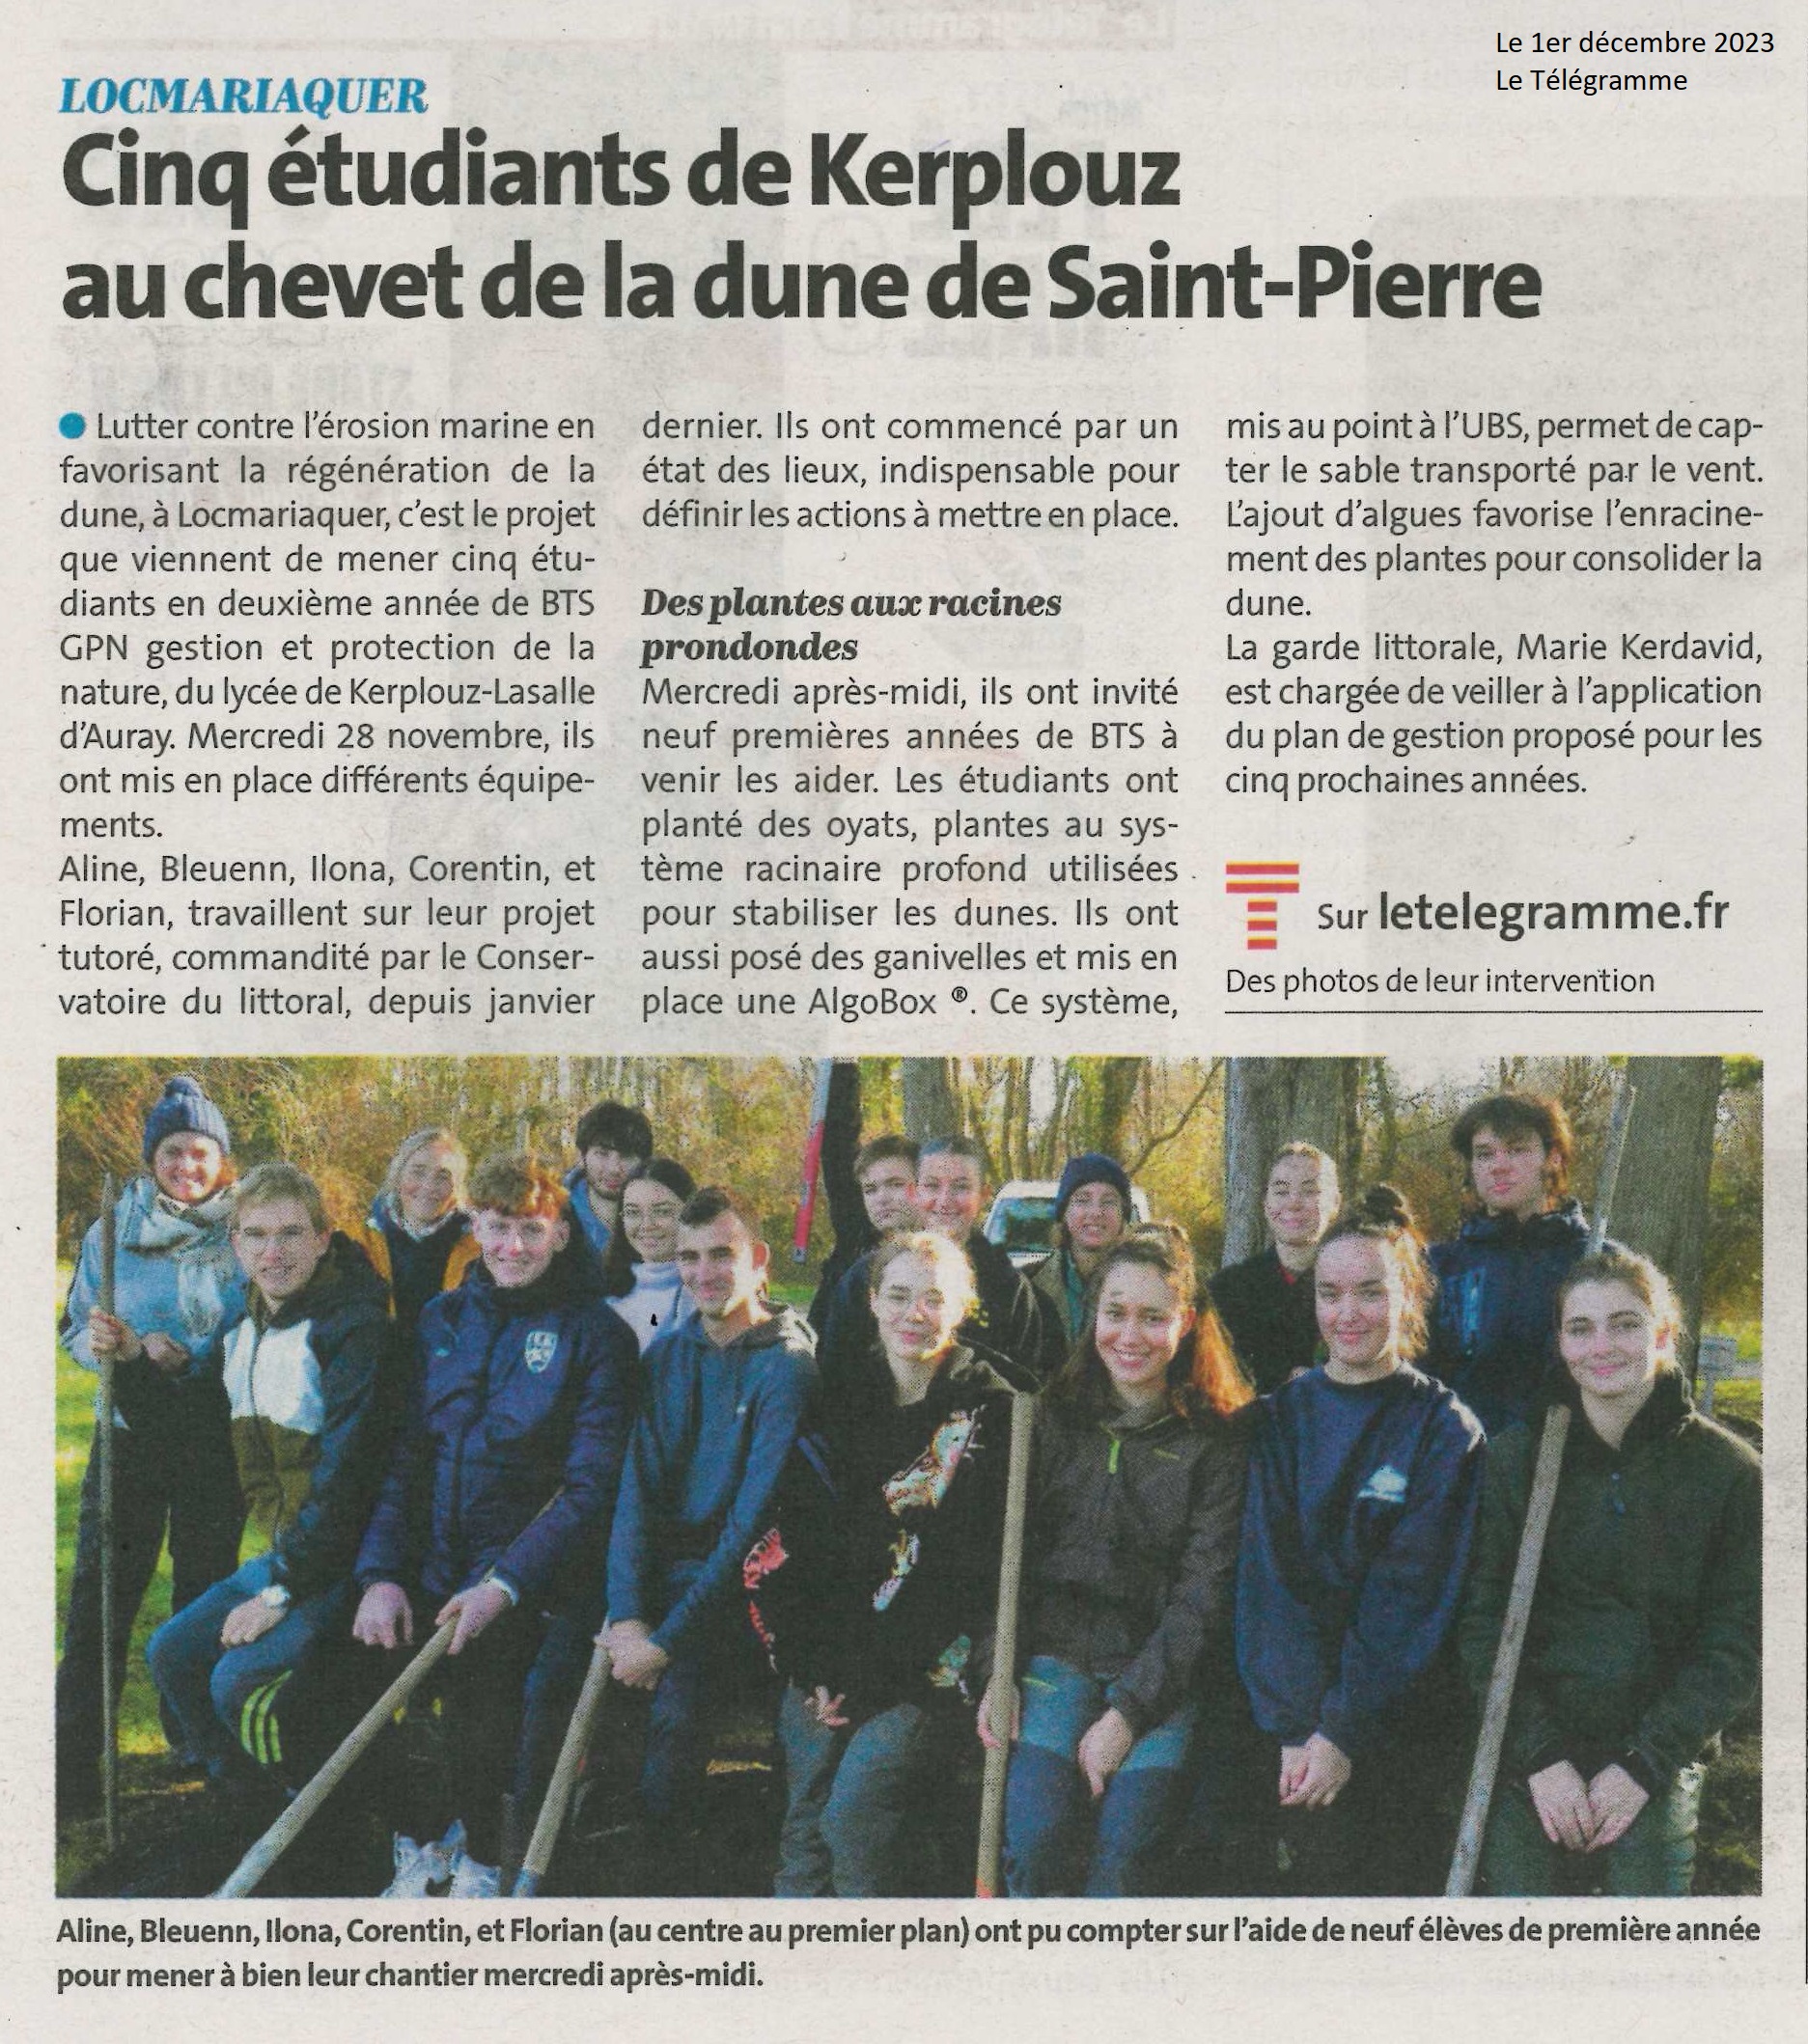 Cinq étudiants de Kerplouz au chevet de la dune de Saint-Pierre